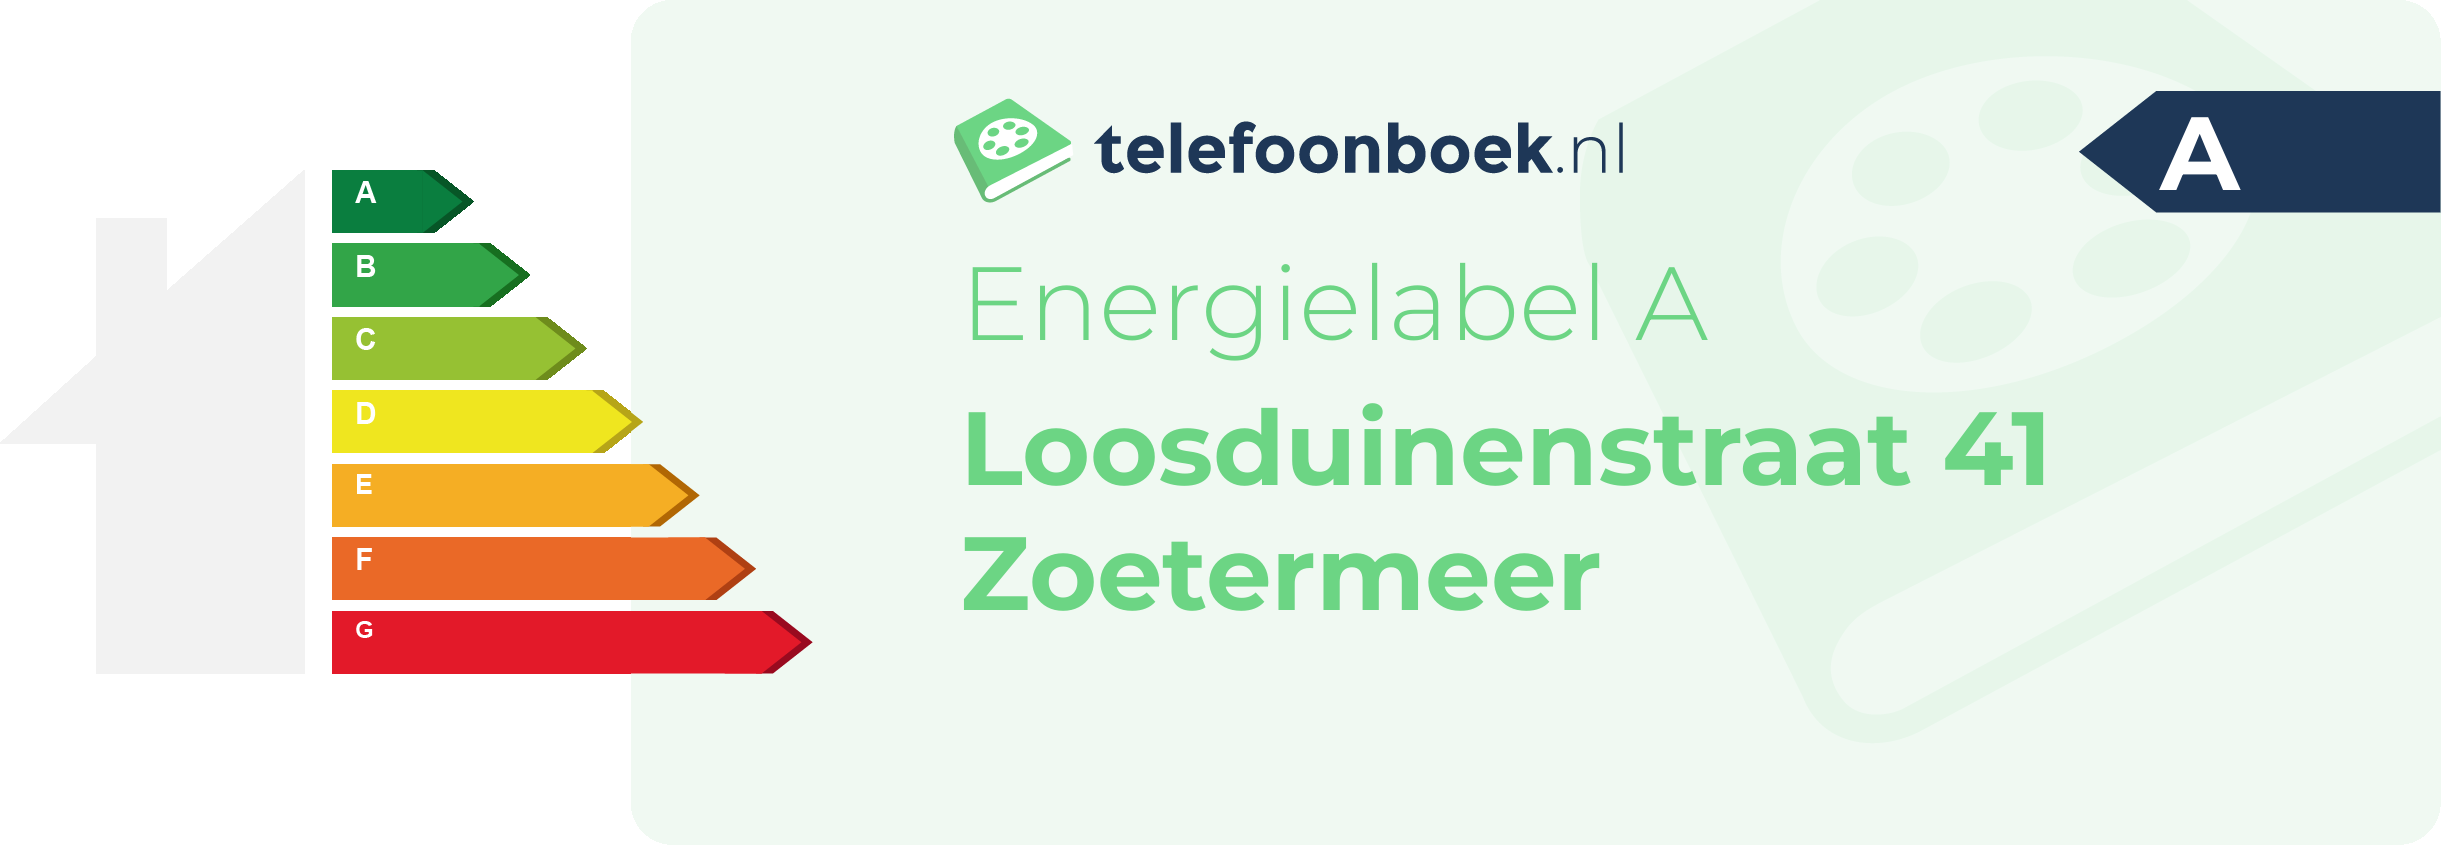 Energielabel Loosduinenstraat 41 Zoetermeer